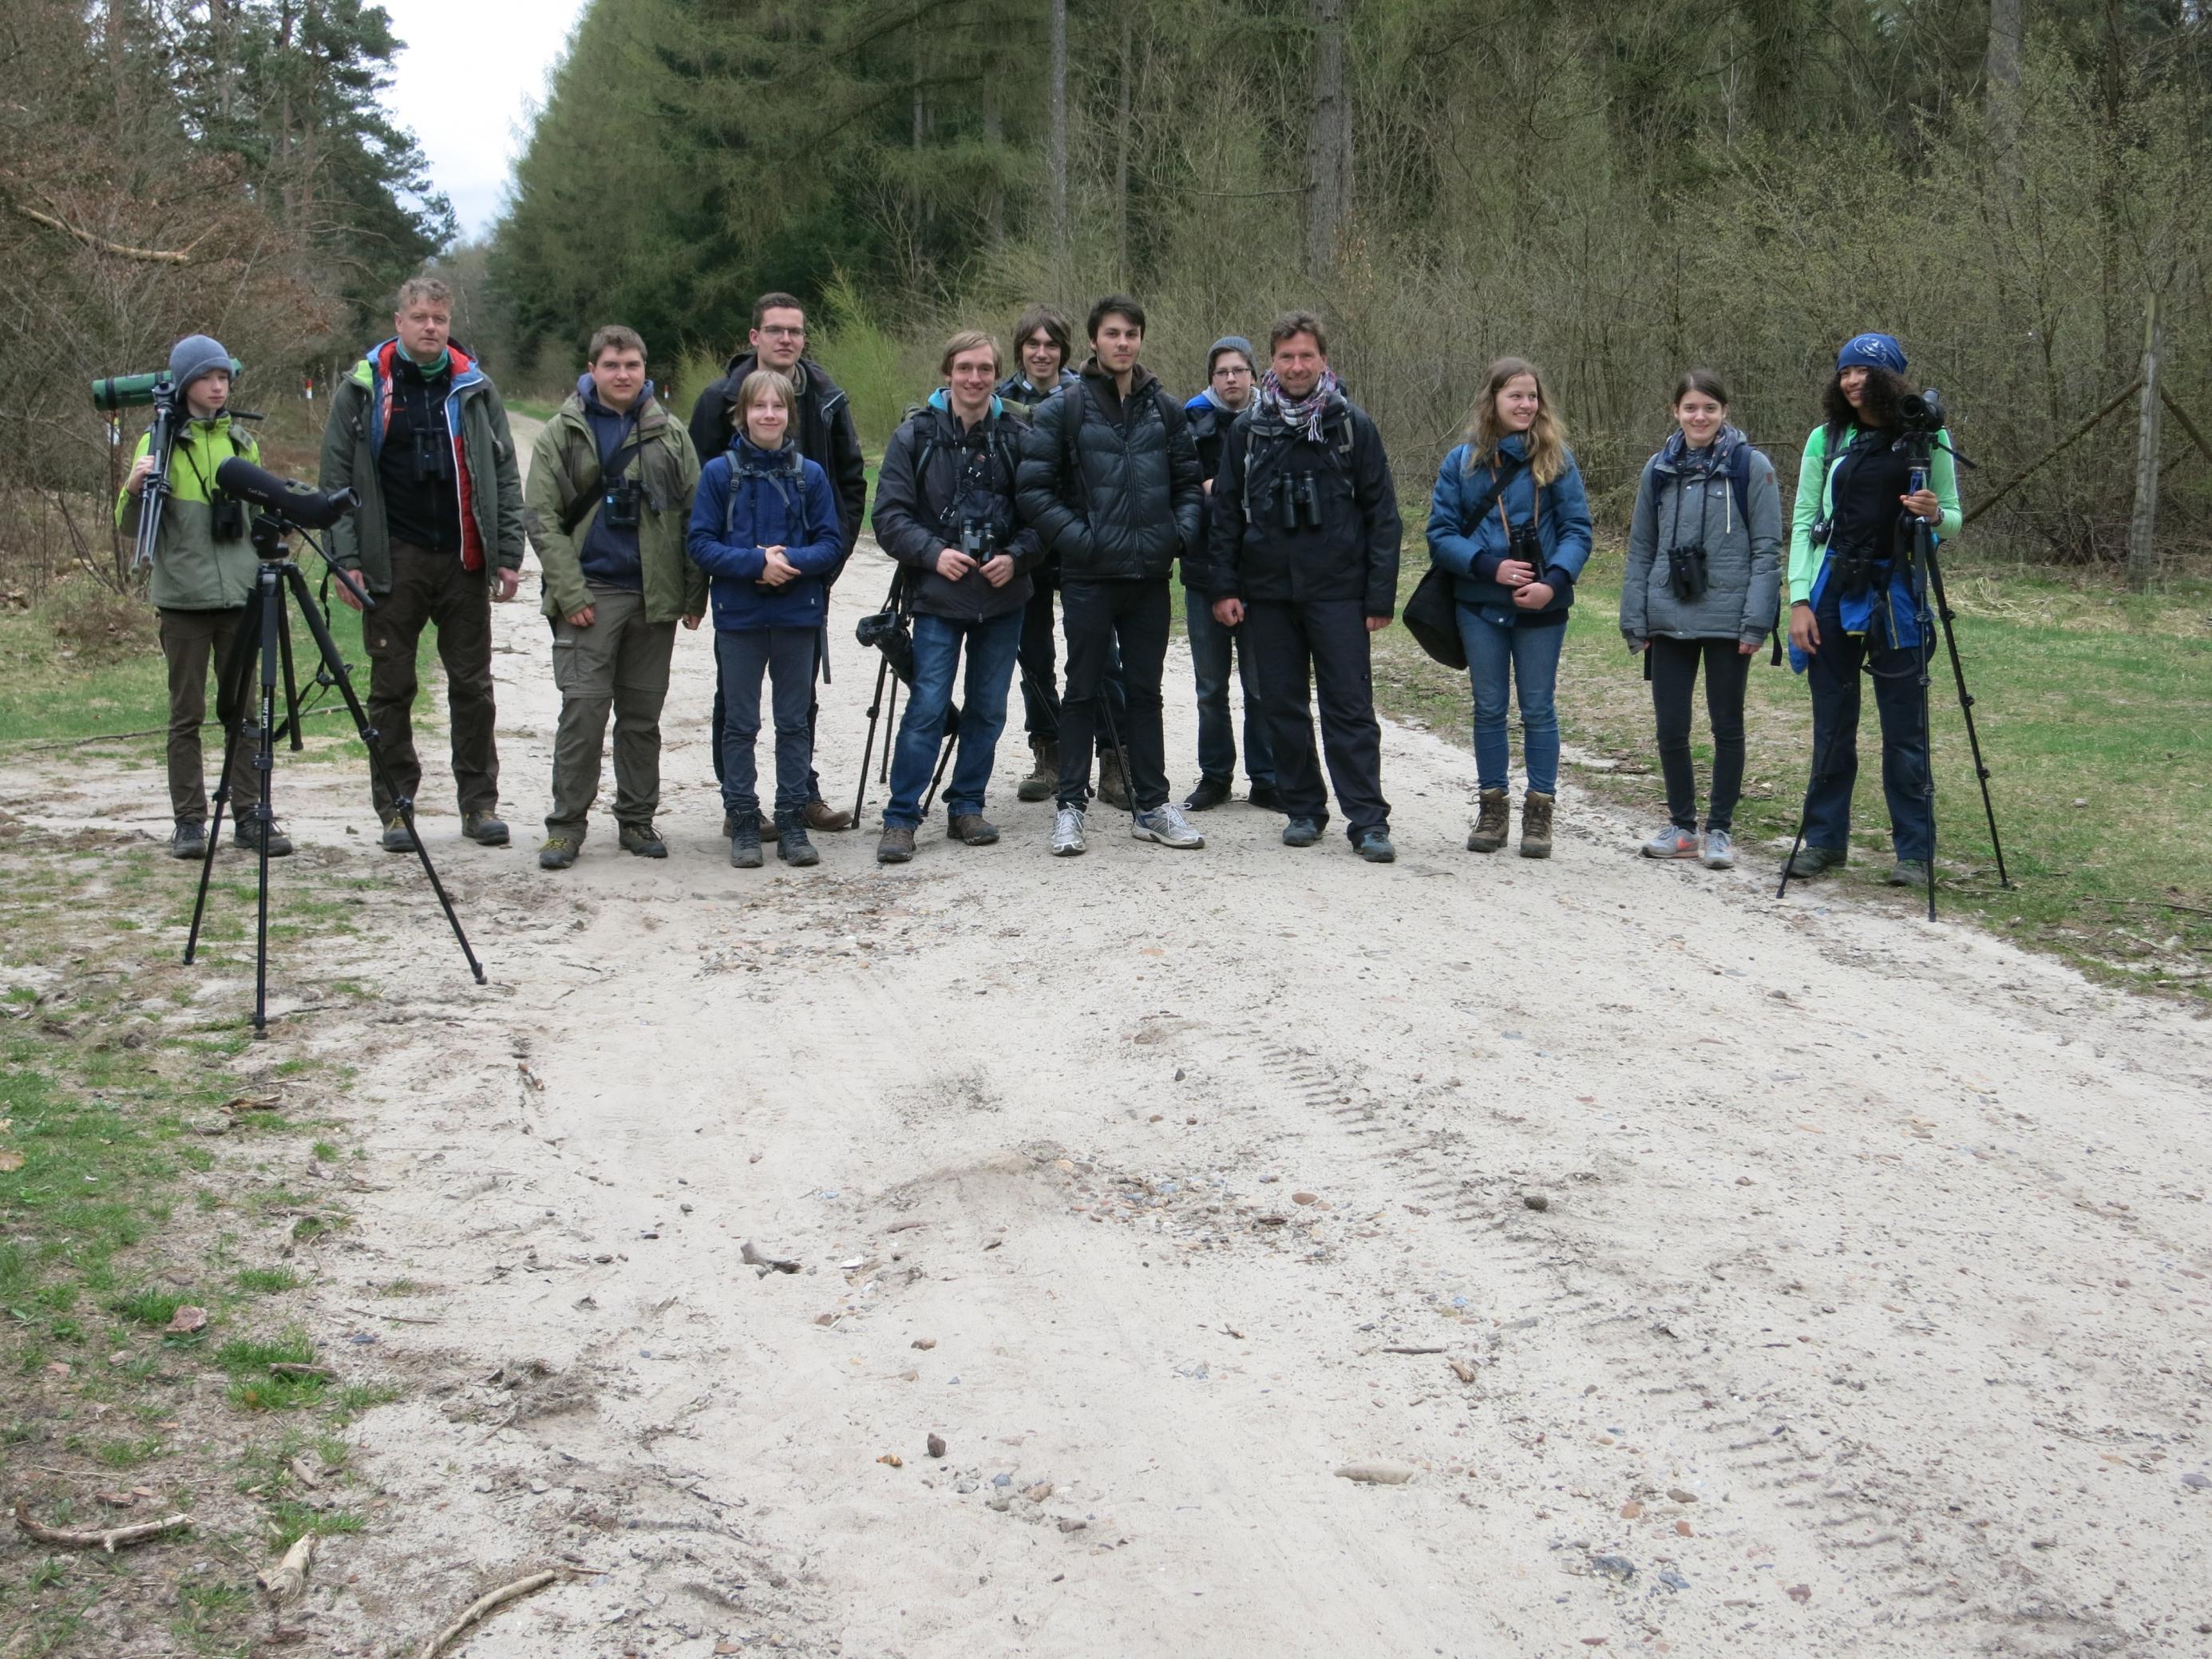 Die Mitglieder des „Young Birders Club“ bei einer Exkursion durch einen Wald bei Hamburg.